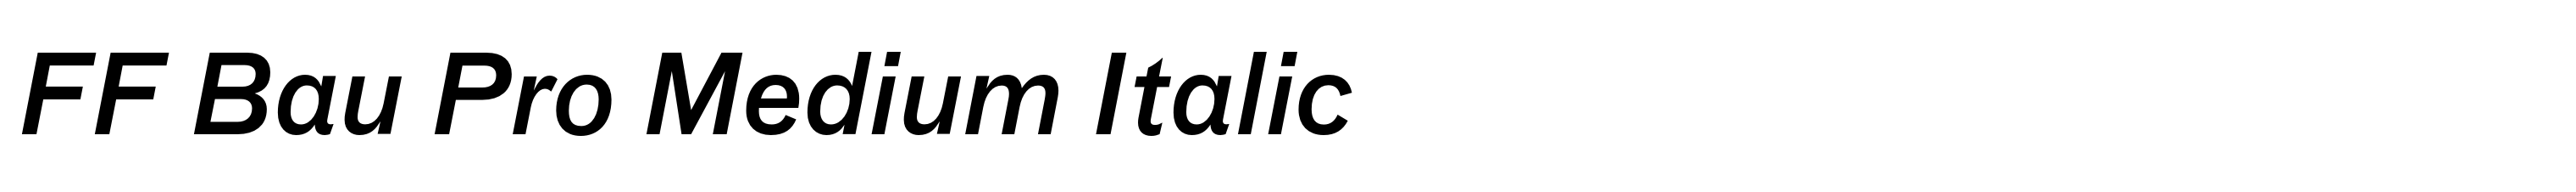 FF Bau Pro Medium Italic